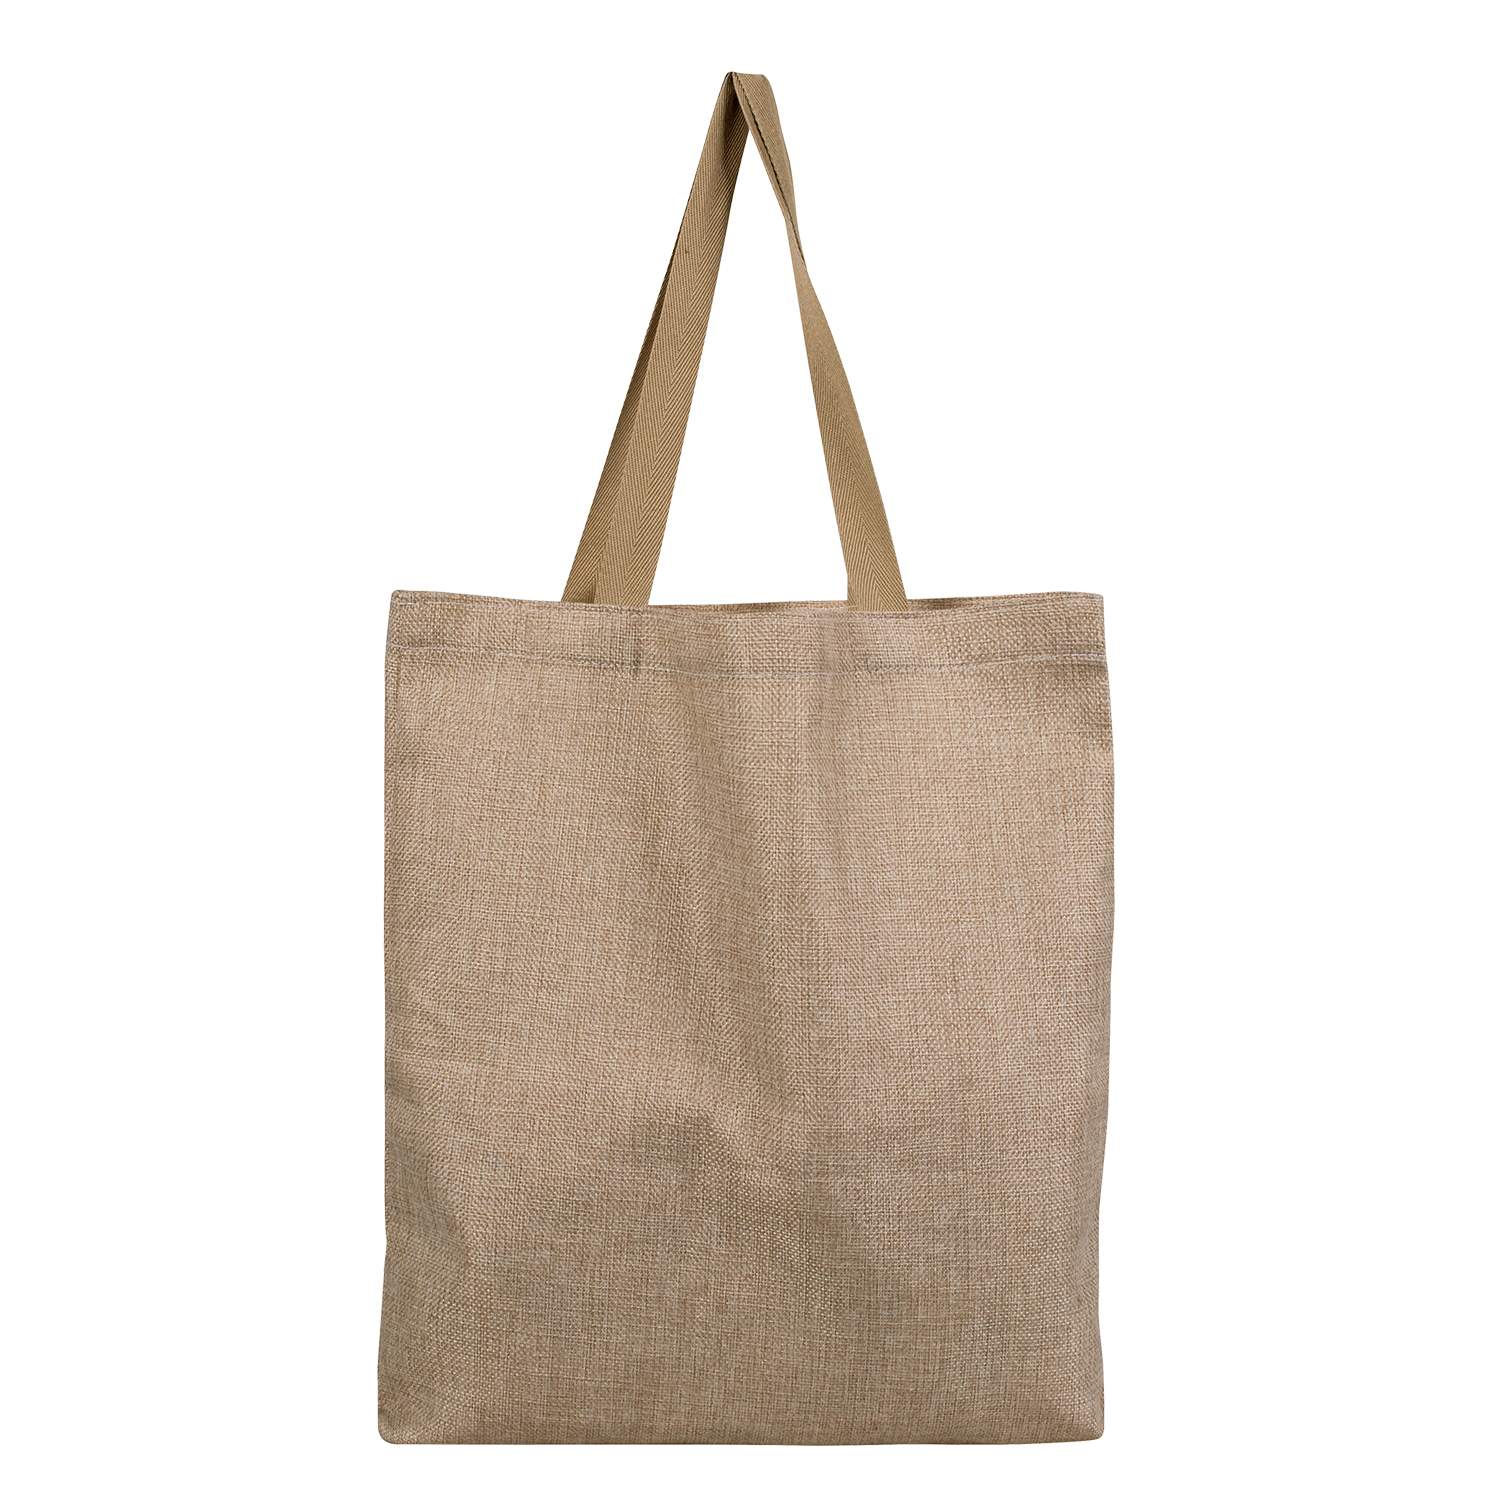 Soft Jute Tote Bag - Gift Idea